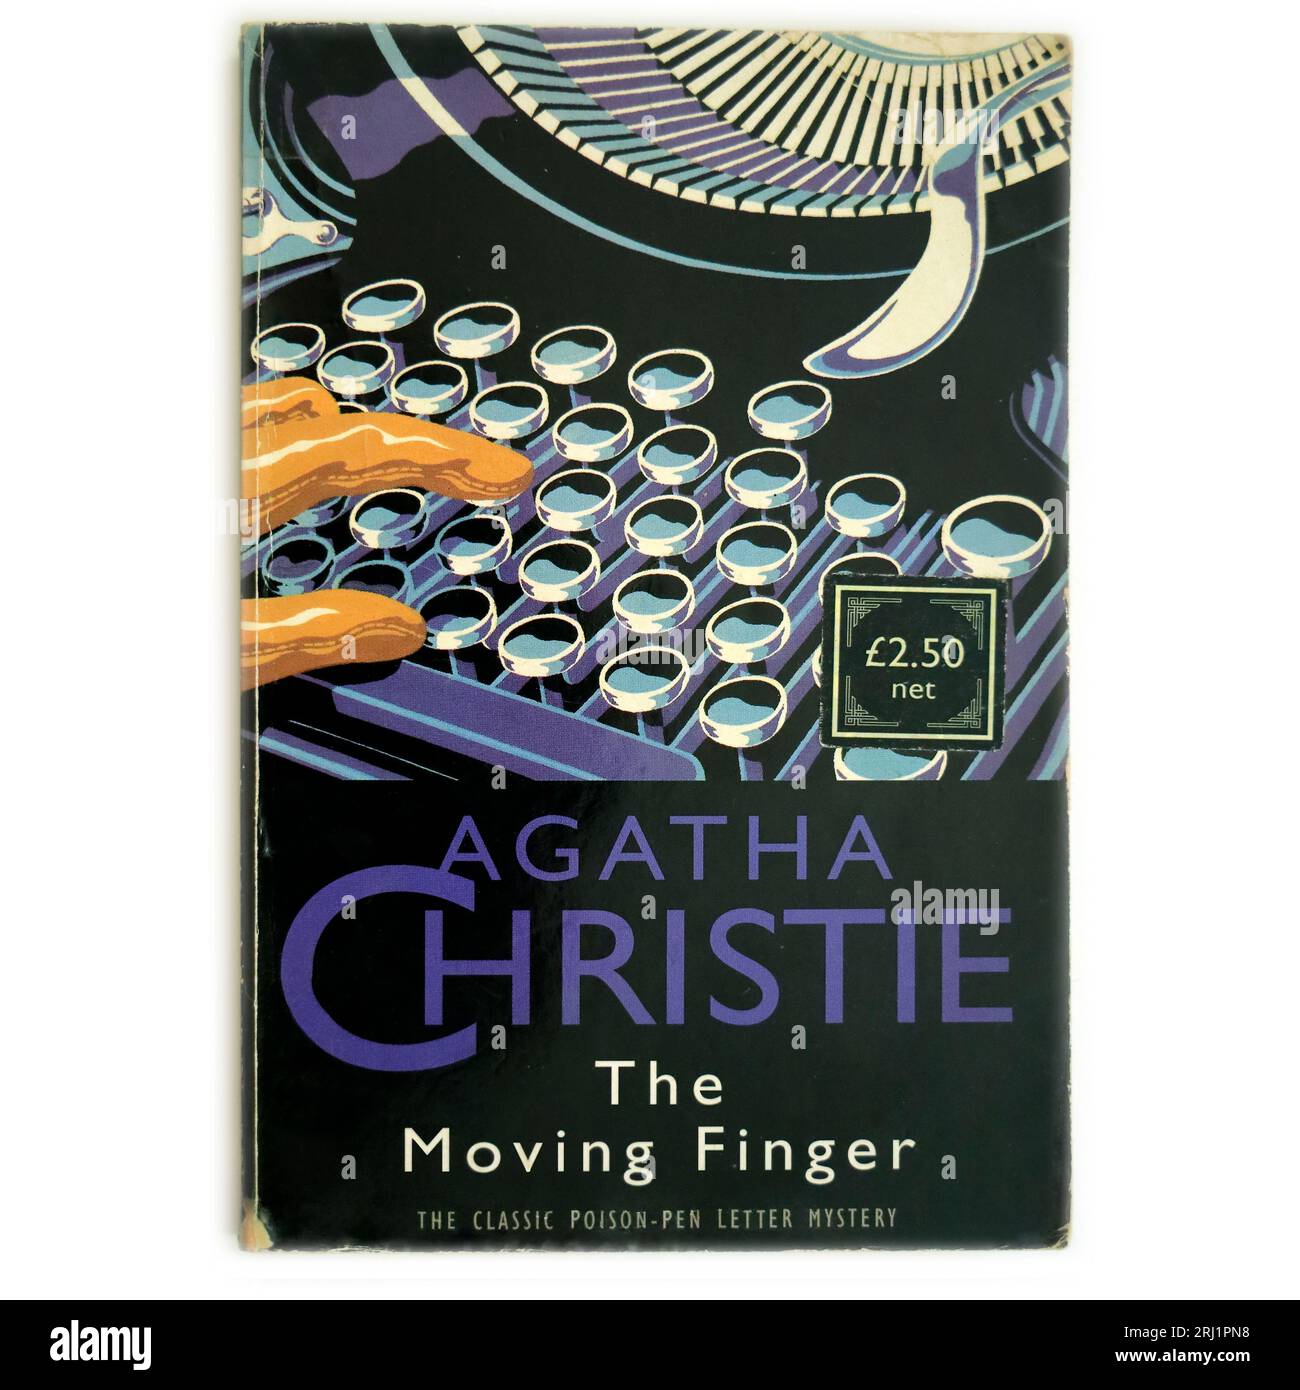 Le doigt en mouvement - Un roman d'Agatha Christie. Le mystère classique de la lettre poison-Pen. Couverture de livre. Banque D'Images